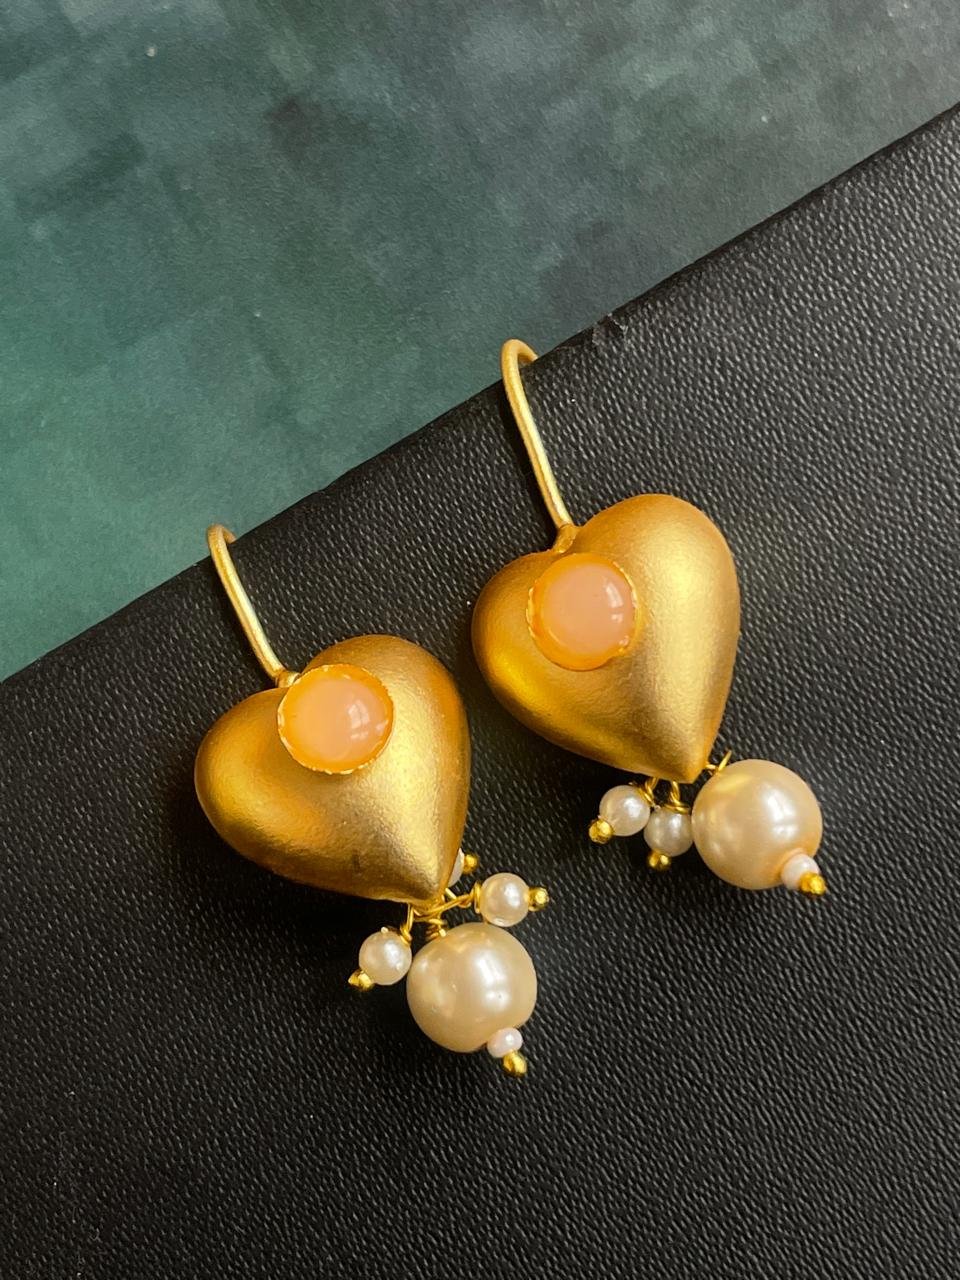 Monalisa Stone Heart Shape Golden Stud Pearl Earring